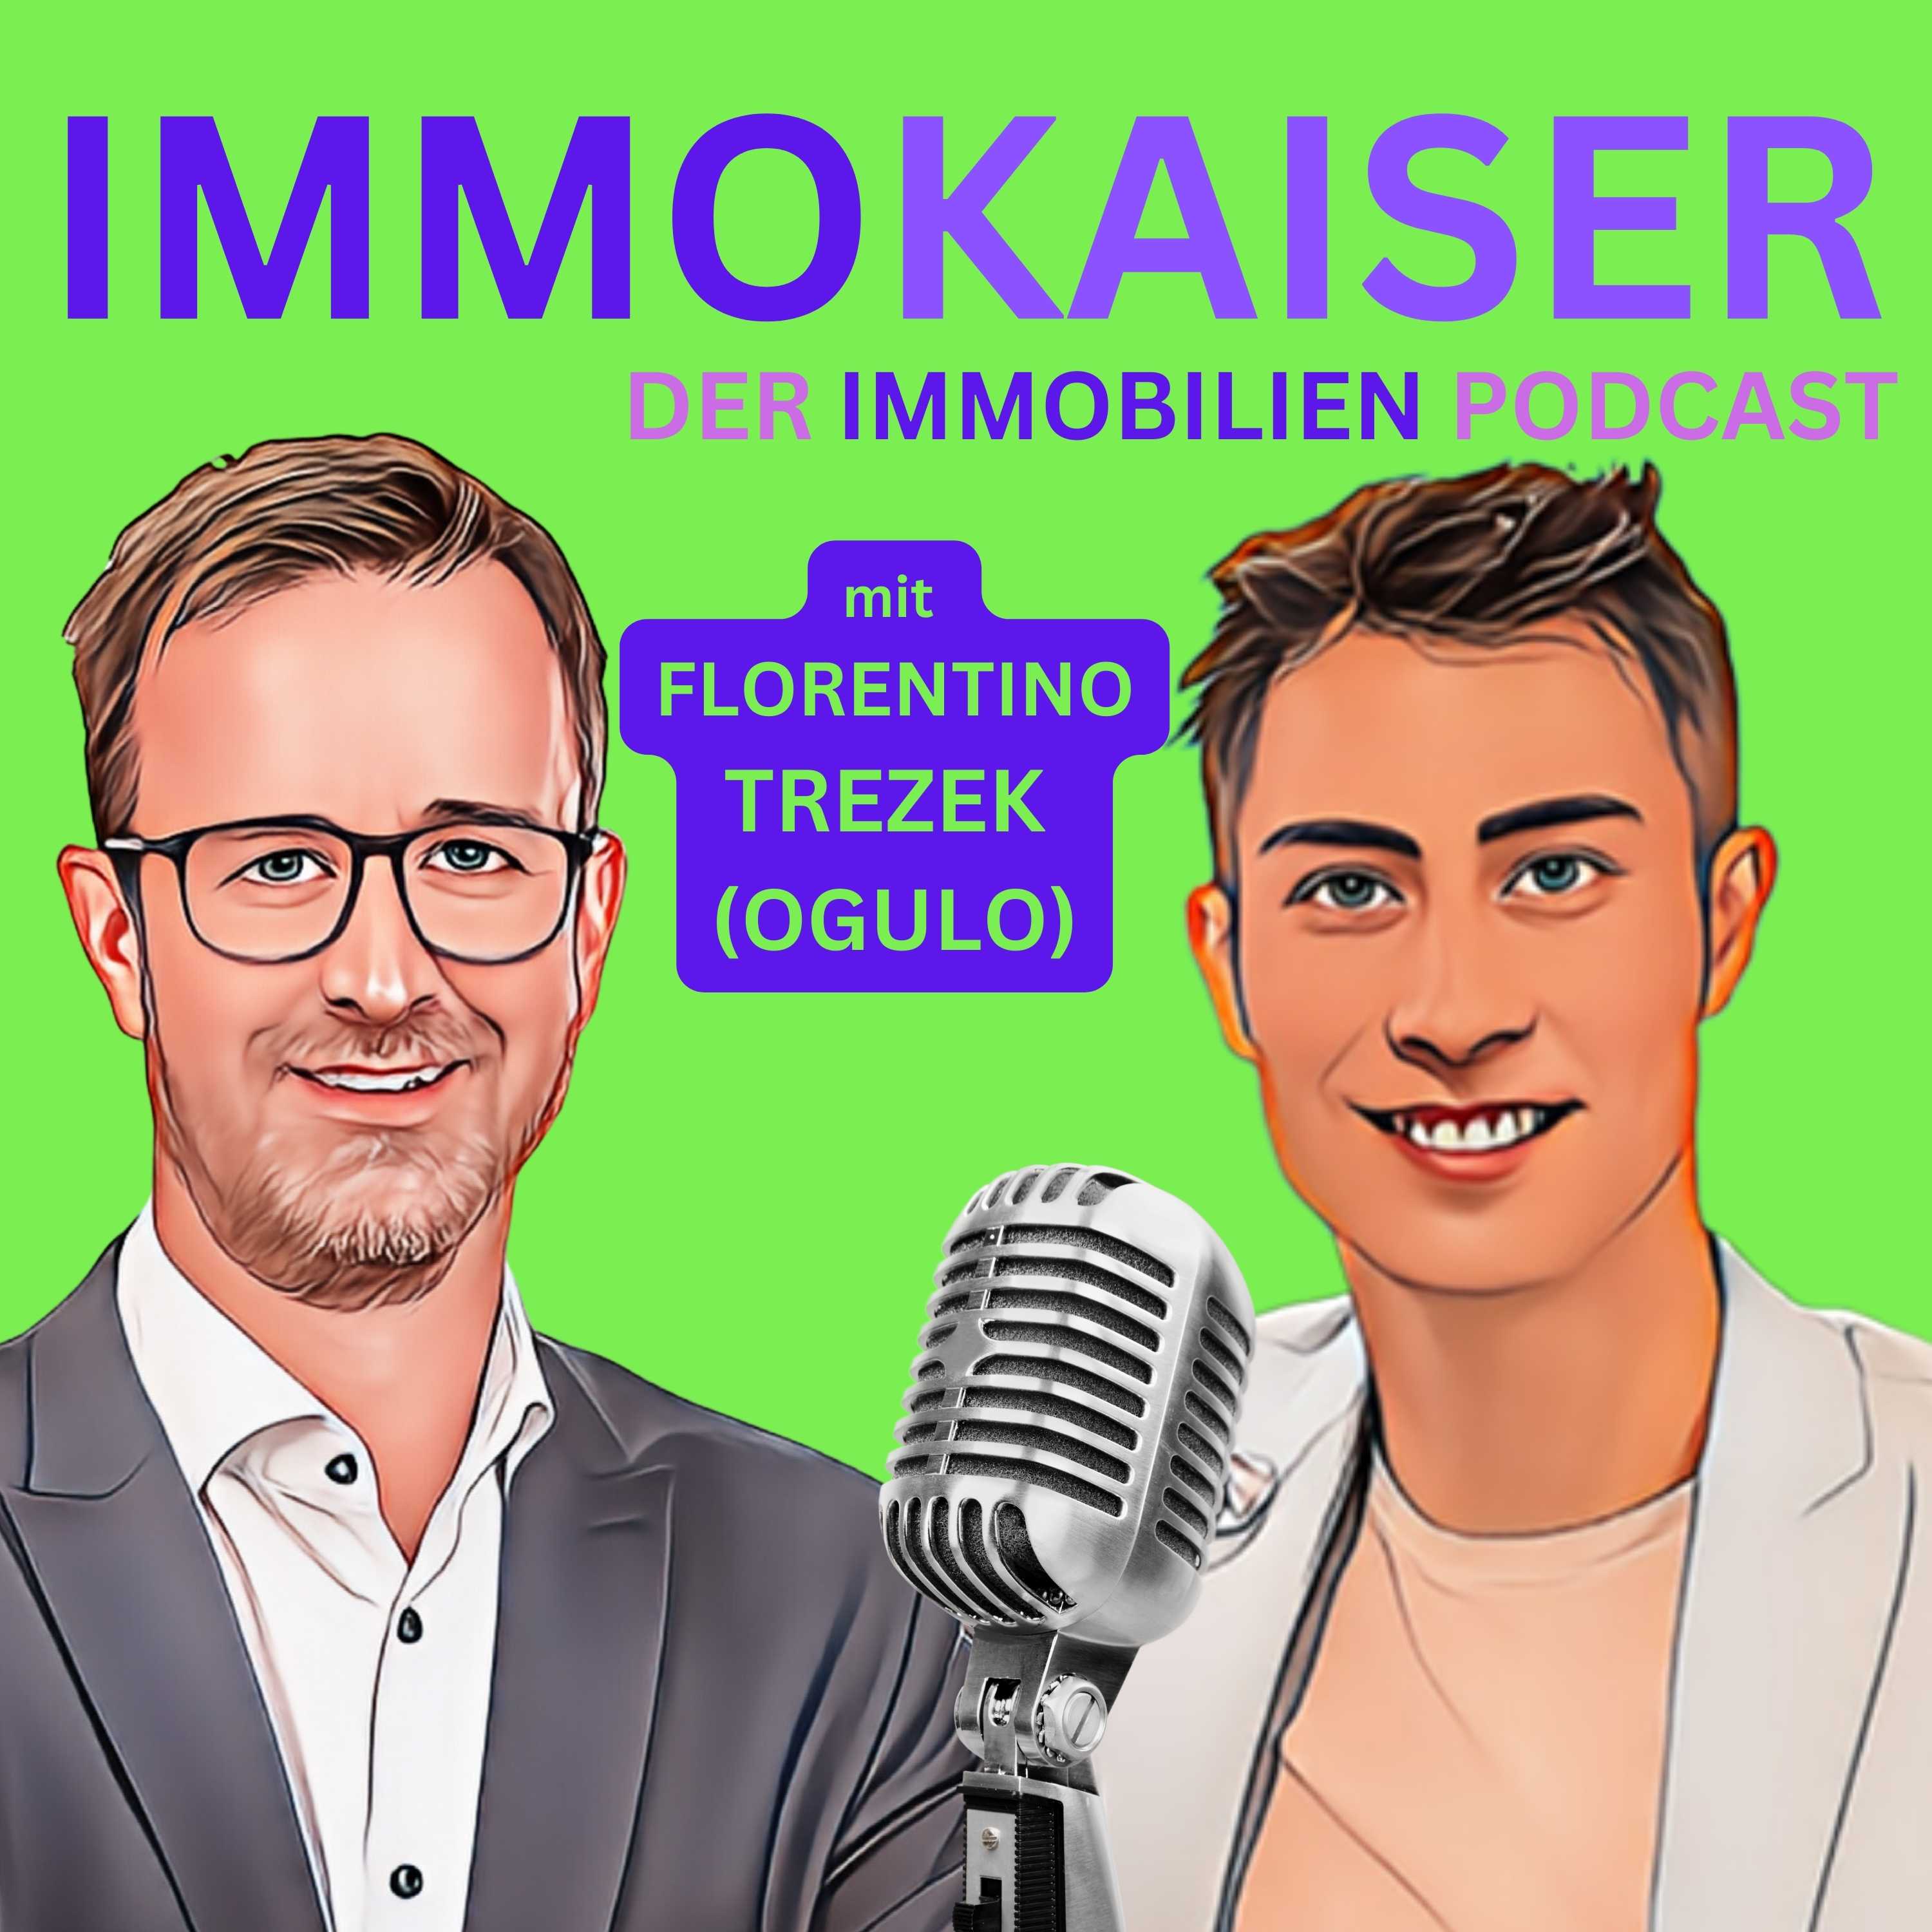 ImmoKaiser Podcast Cover #02 mit Florentino Trezek V3